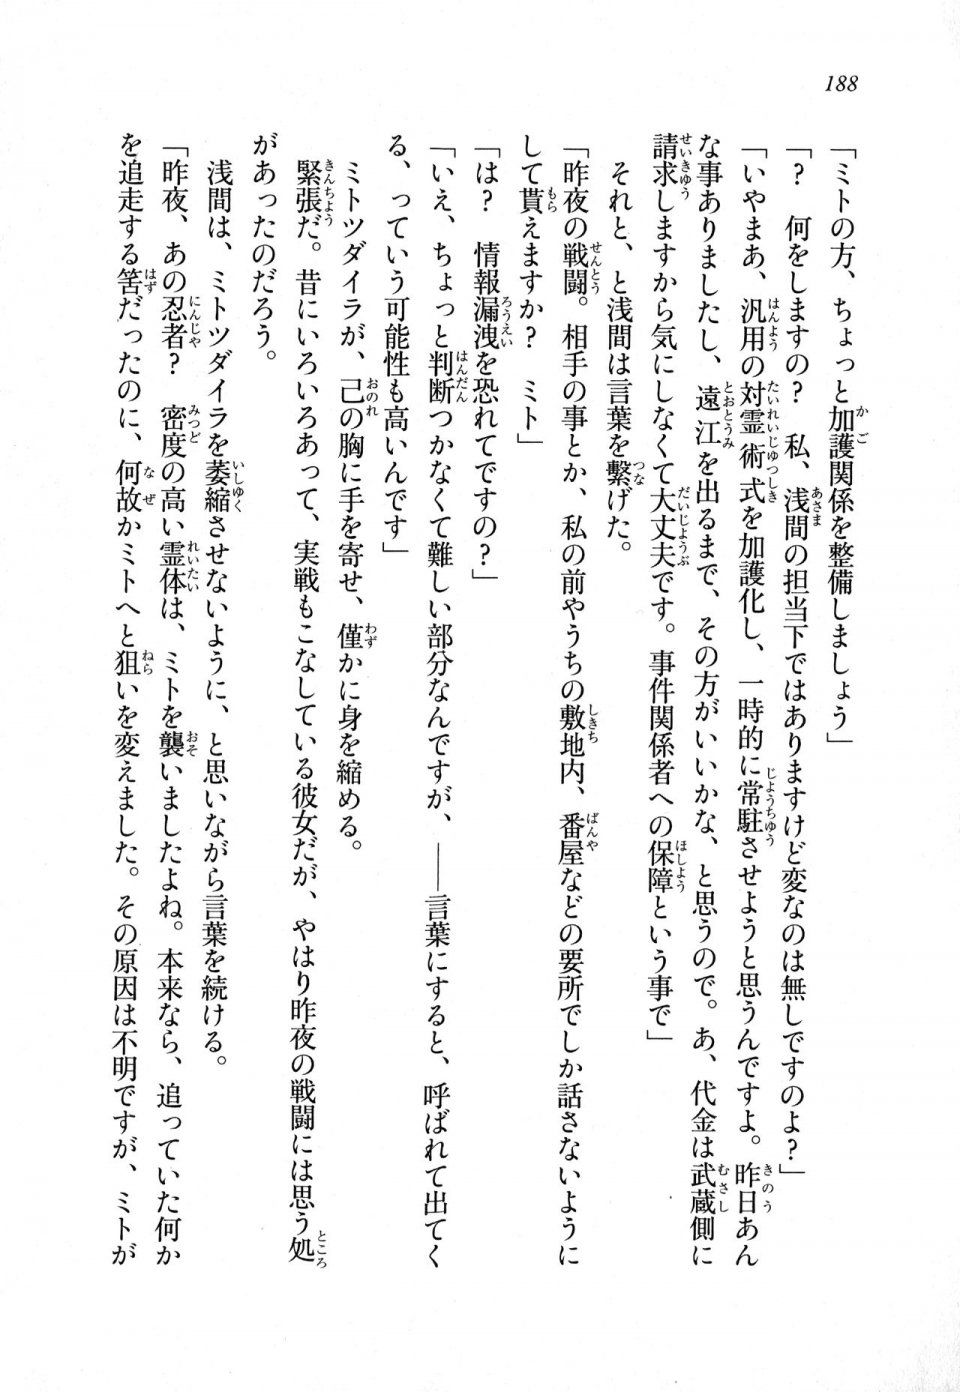 Kyoukai Senjou no Horizon LN Sidestory Vol 1 - Photo #186